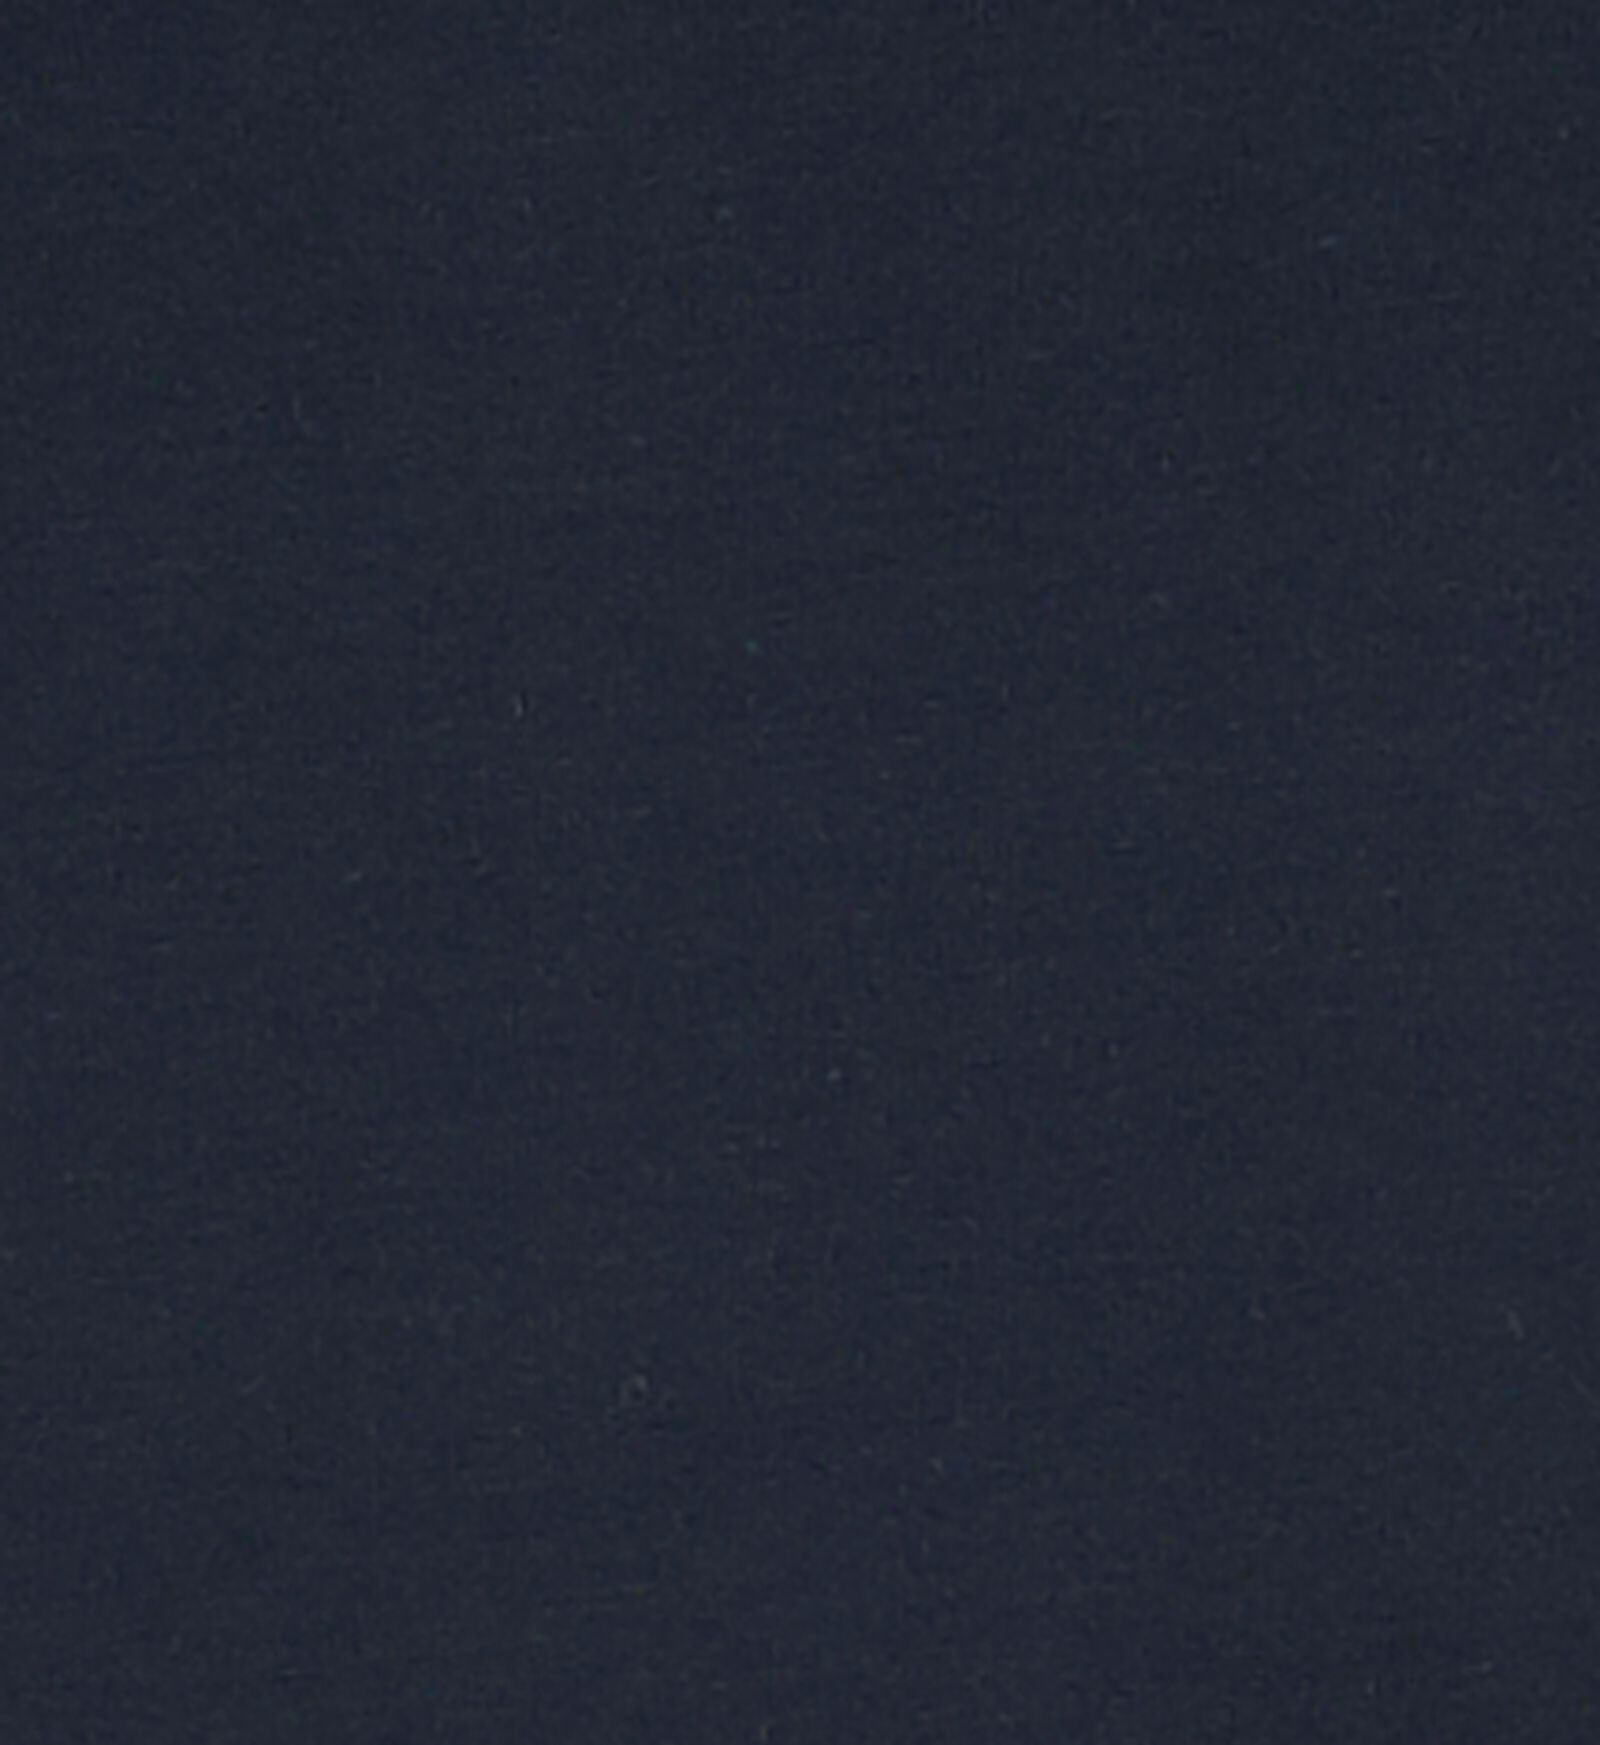 Damen-Hemd dunkelblau dunkelblau - 1000018550 - HEMA